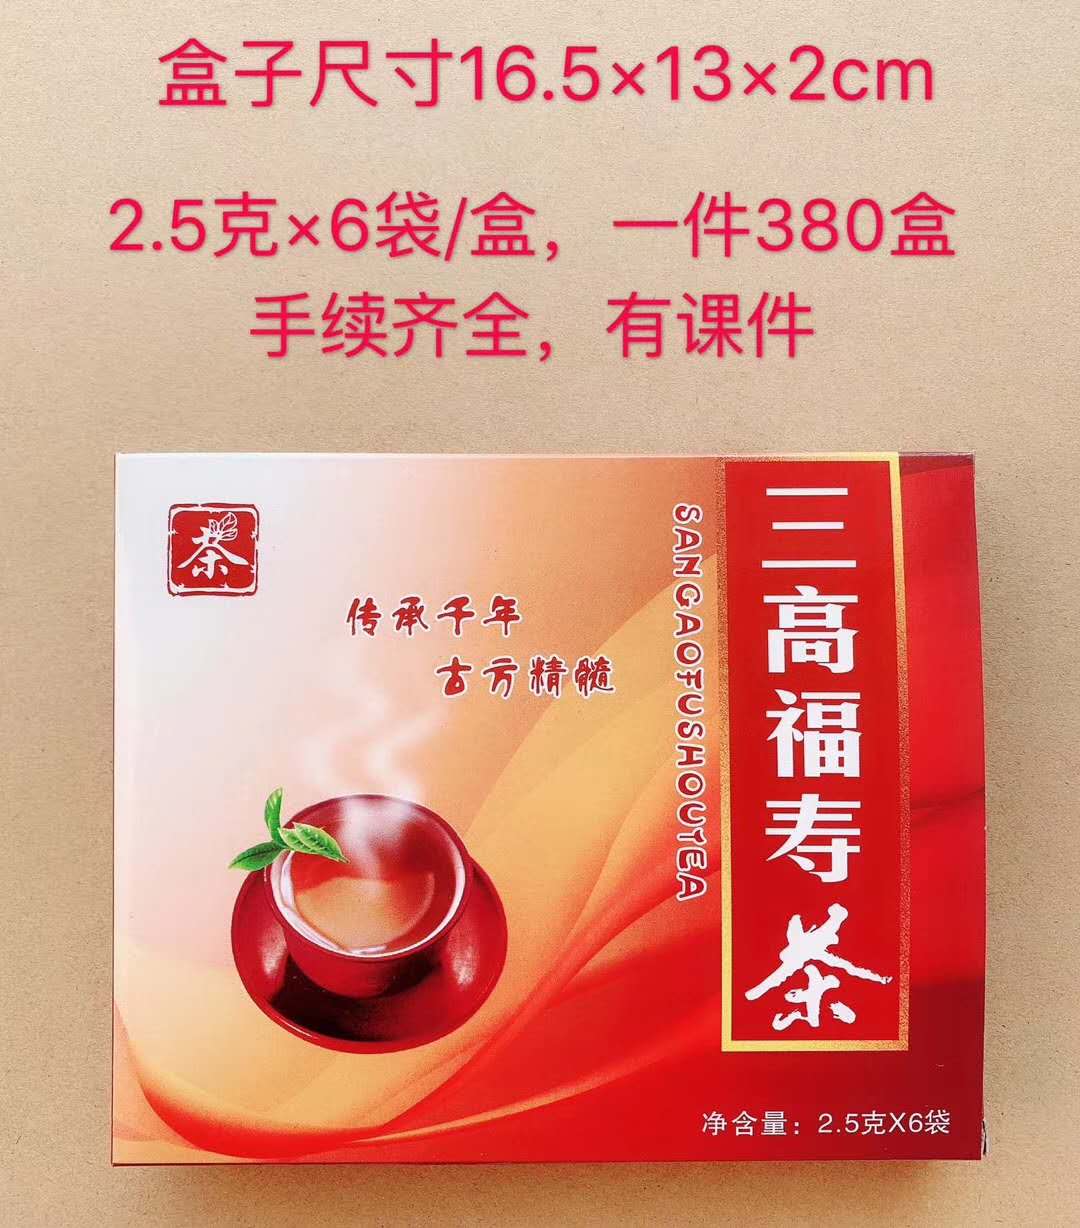 三高福寿茶